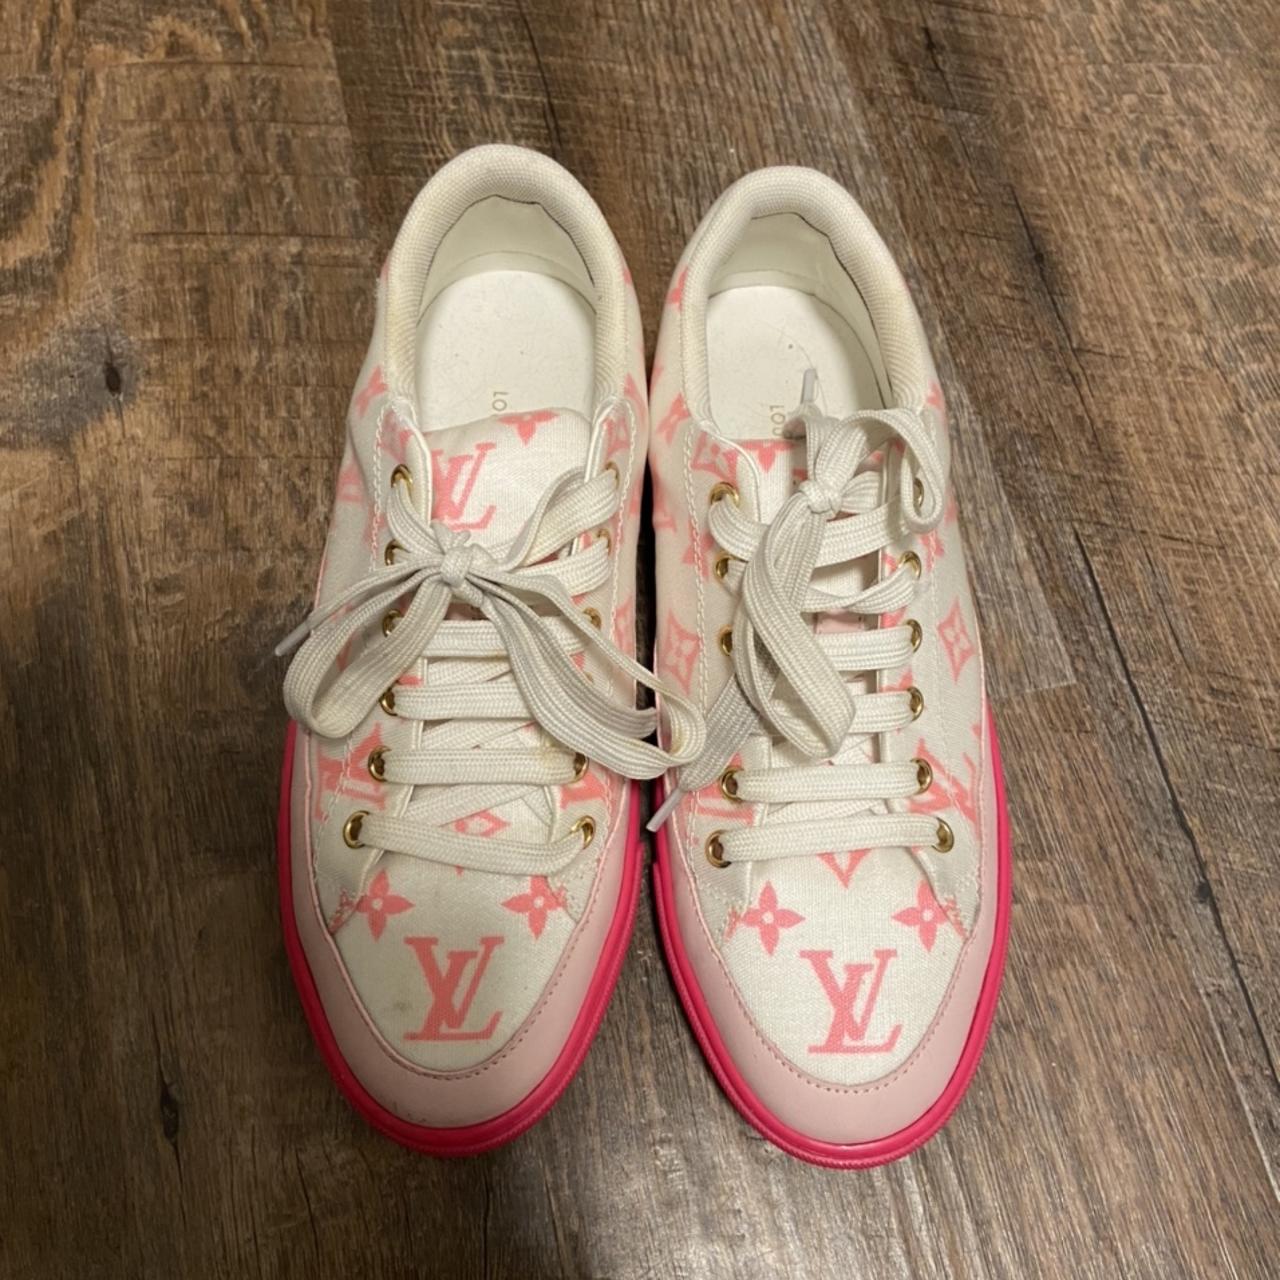 Louis Vuitton women sneakers size 38 Used in good - Depop